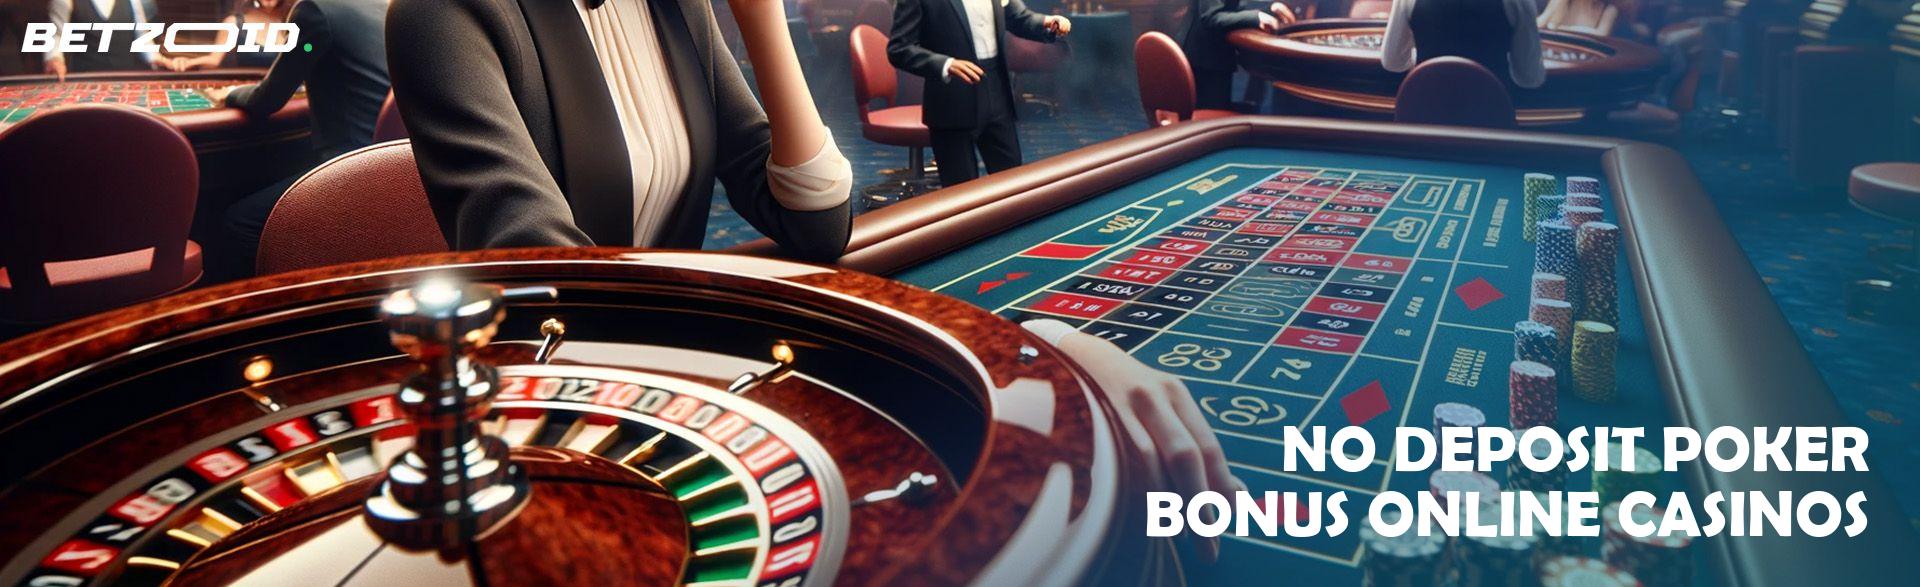 No Deposit Poker Bonus Online Casinos.